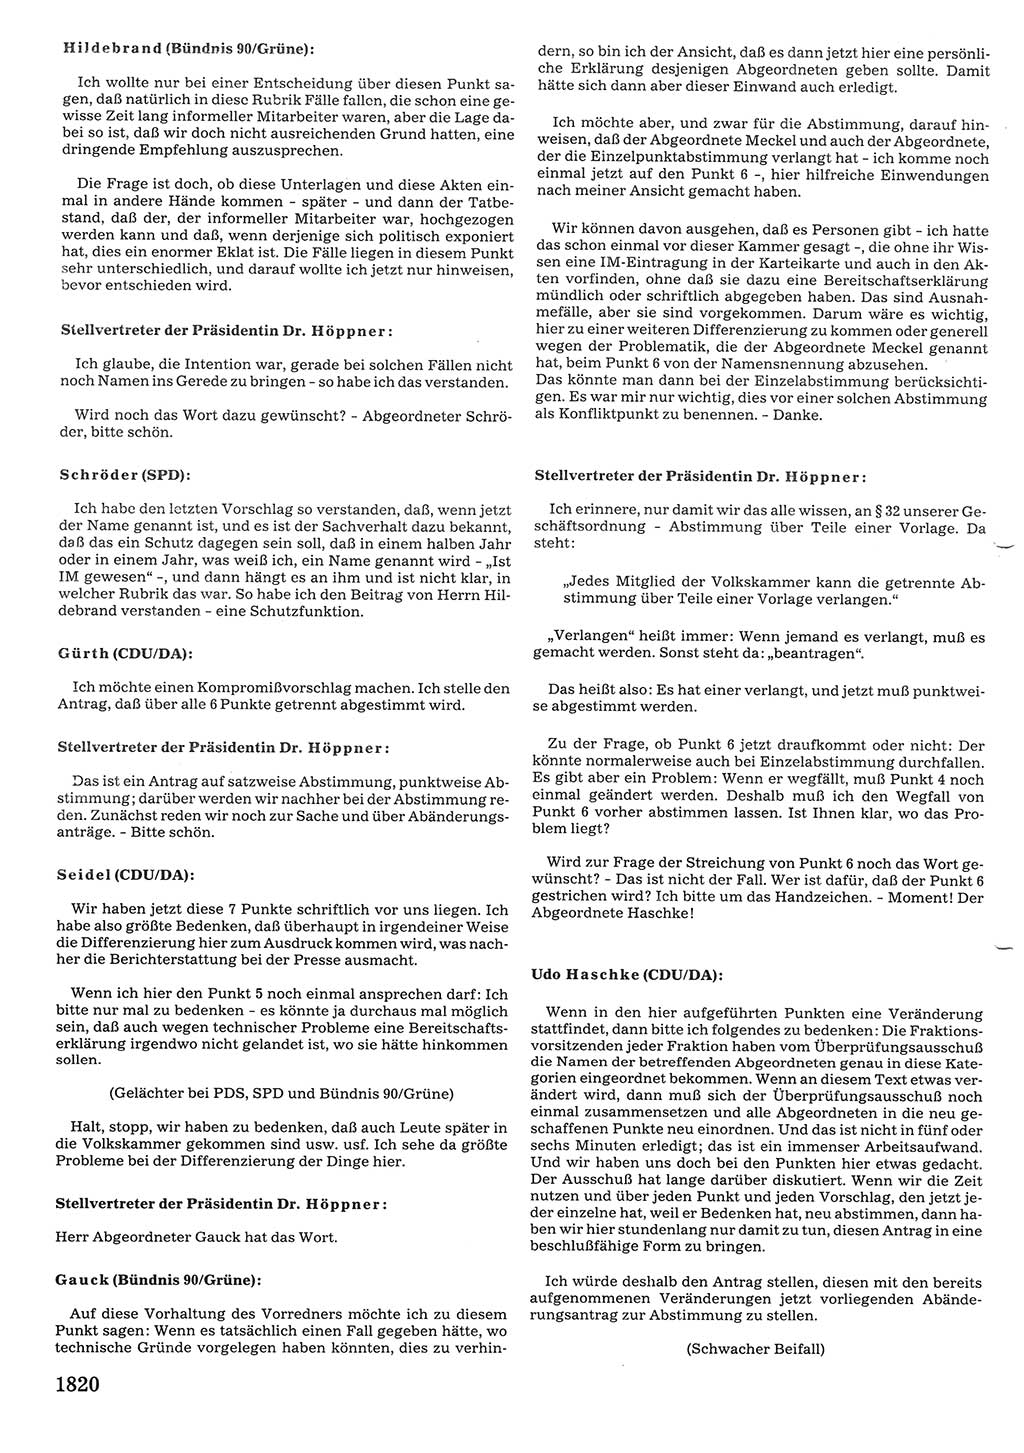 Tagungen der Volkskammer (VK) der Deutschen Demokratischen Republik (DDR), 10. Wahlperiode 1990, Seite 1820 (VK. DDR 10. WP. 1990, Prot. Tg. 1-38, 5.4.-2.10.1990, S. 1820)